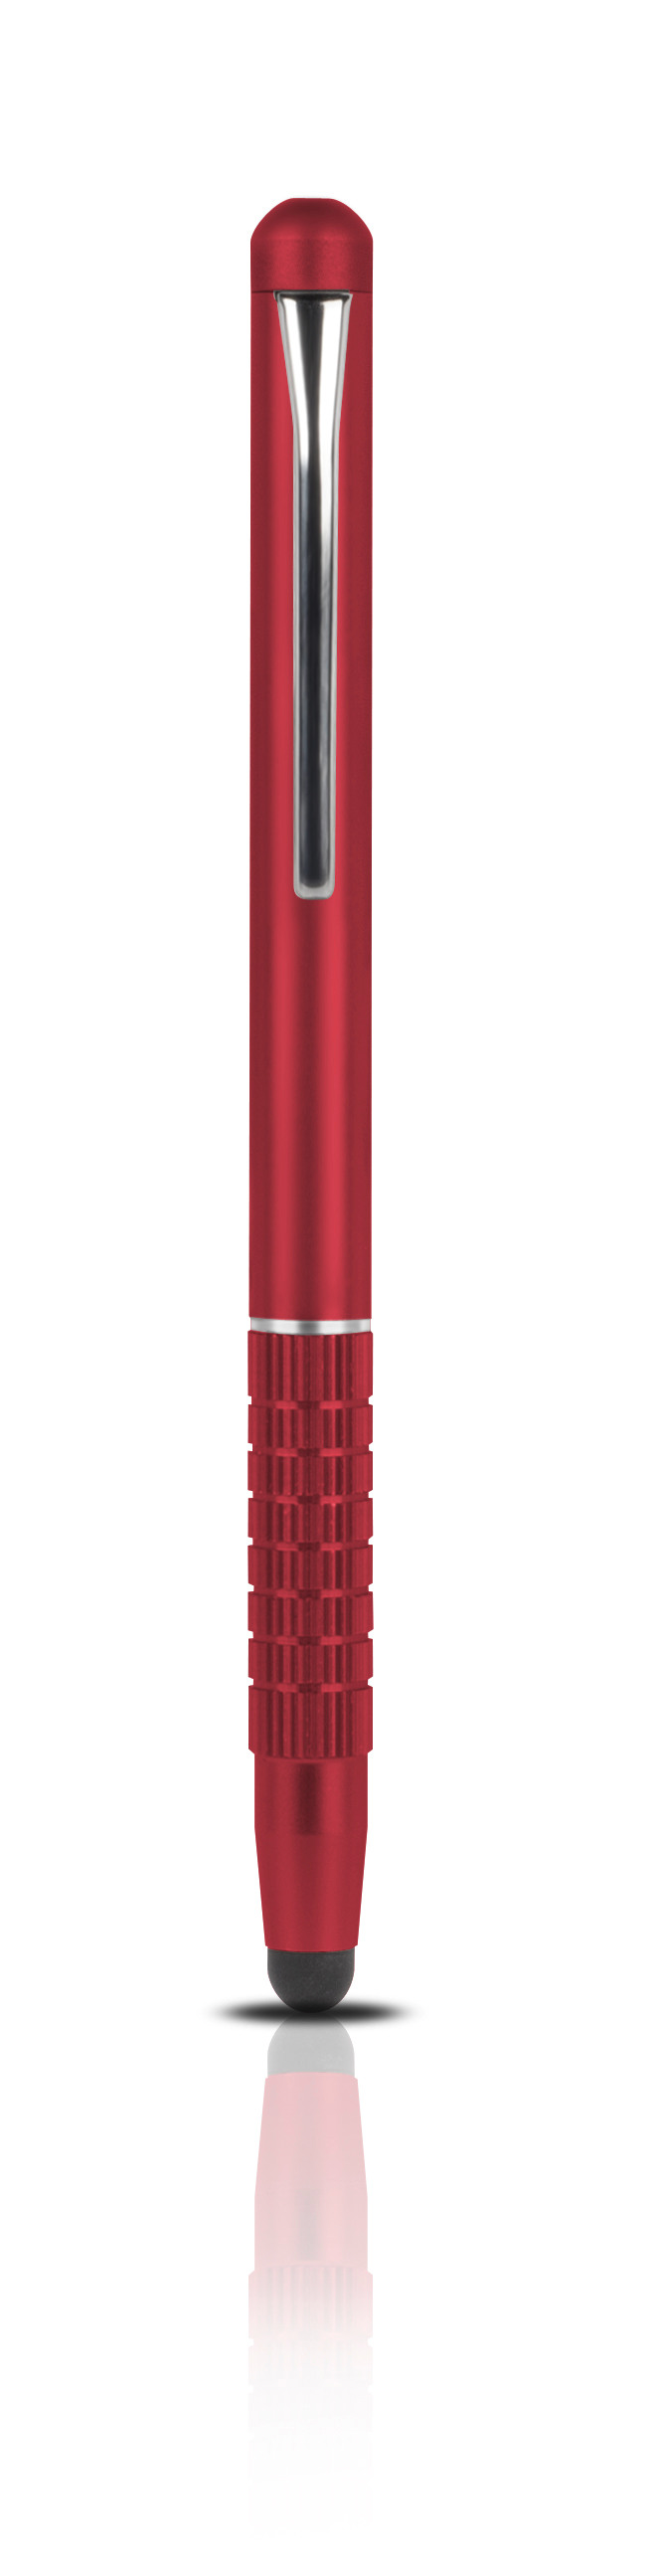 SPEEDLINK Touchscreen Pen red SL7006RD QUILL